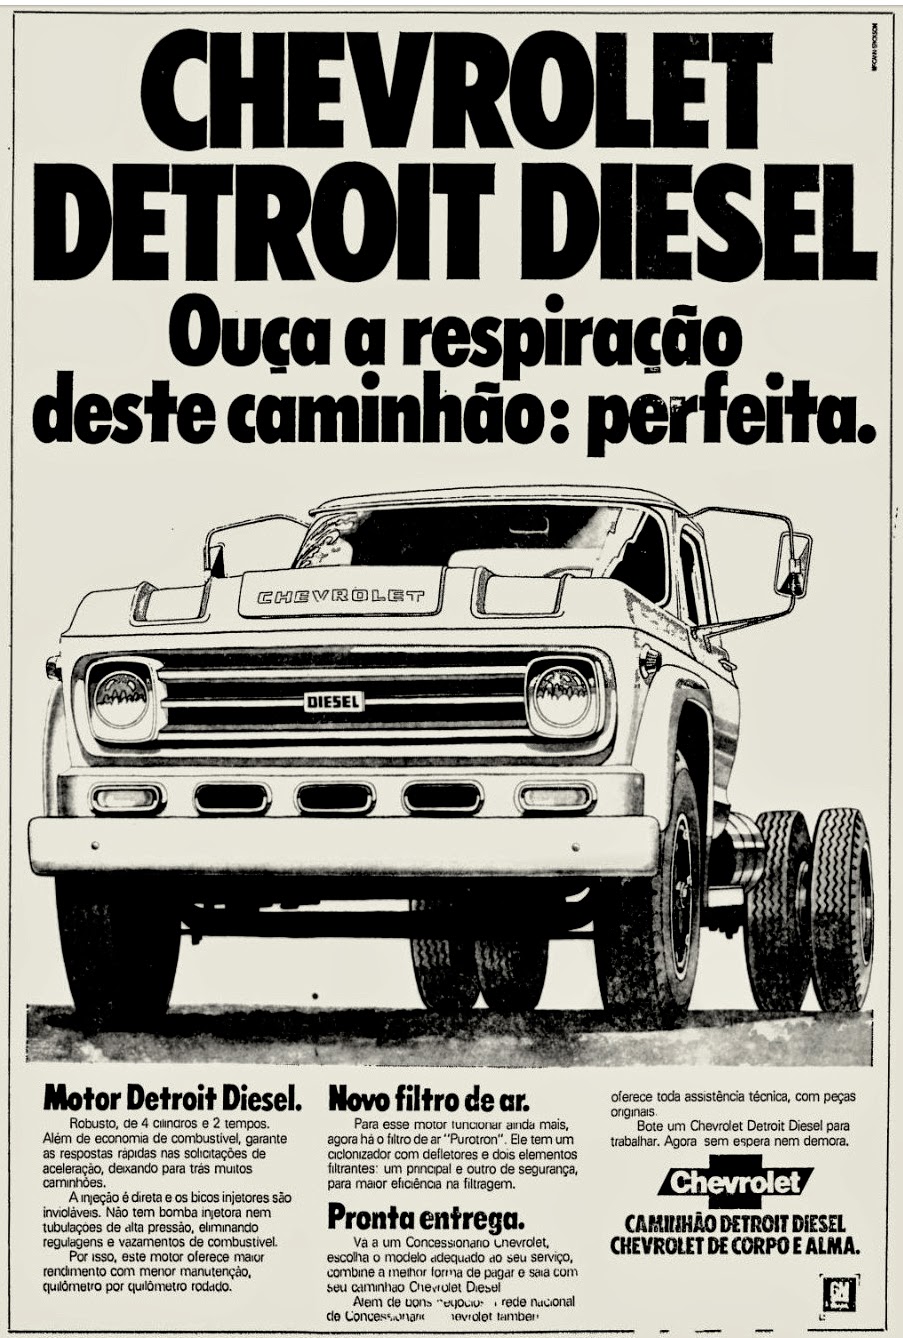  Chevrolet . reclame de carros anos 70. brazilian advertising cars in the 70. os anos 70. história da década de 70; Brazil in the 70s; propaganda carros anos 70; Oswaldo Hernandez;